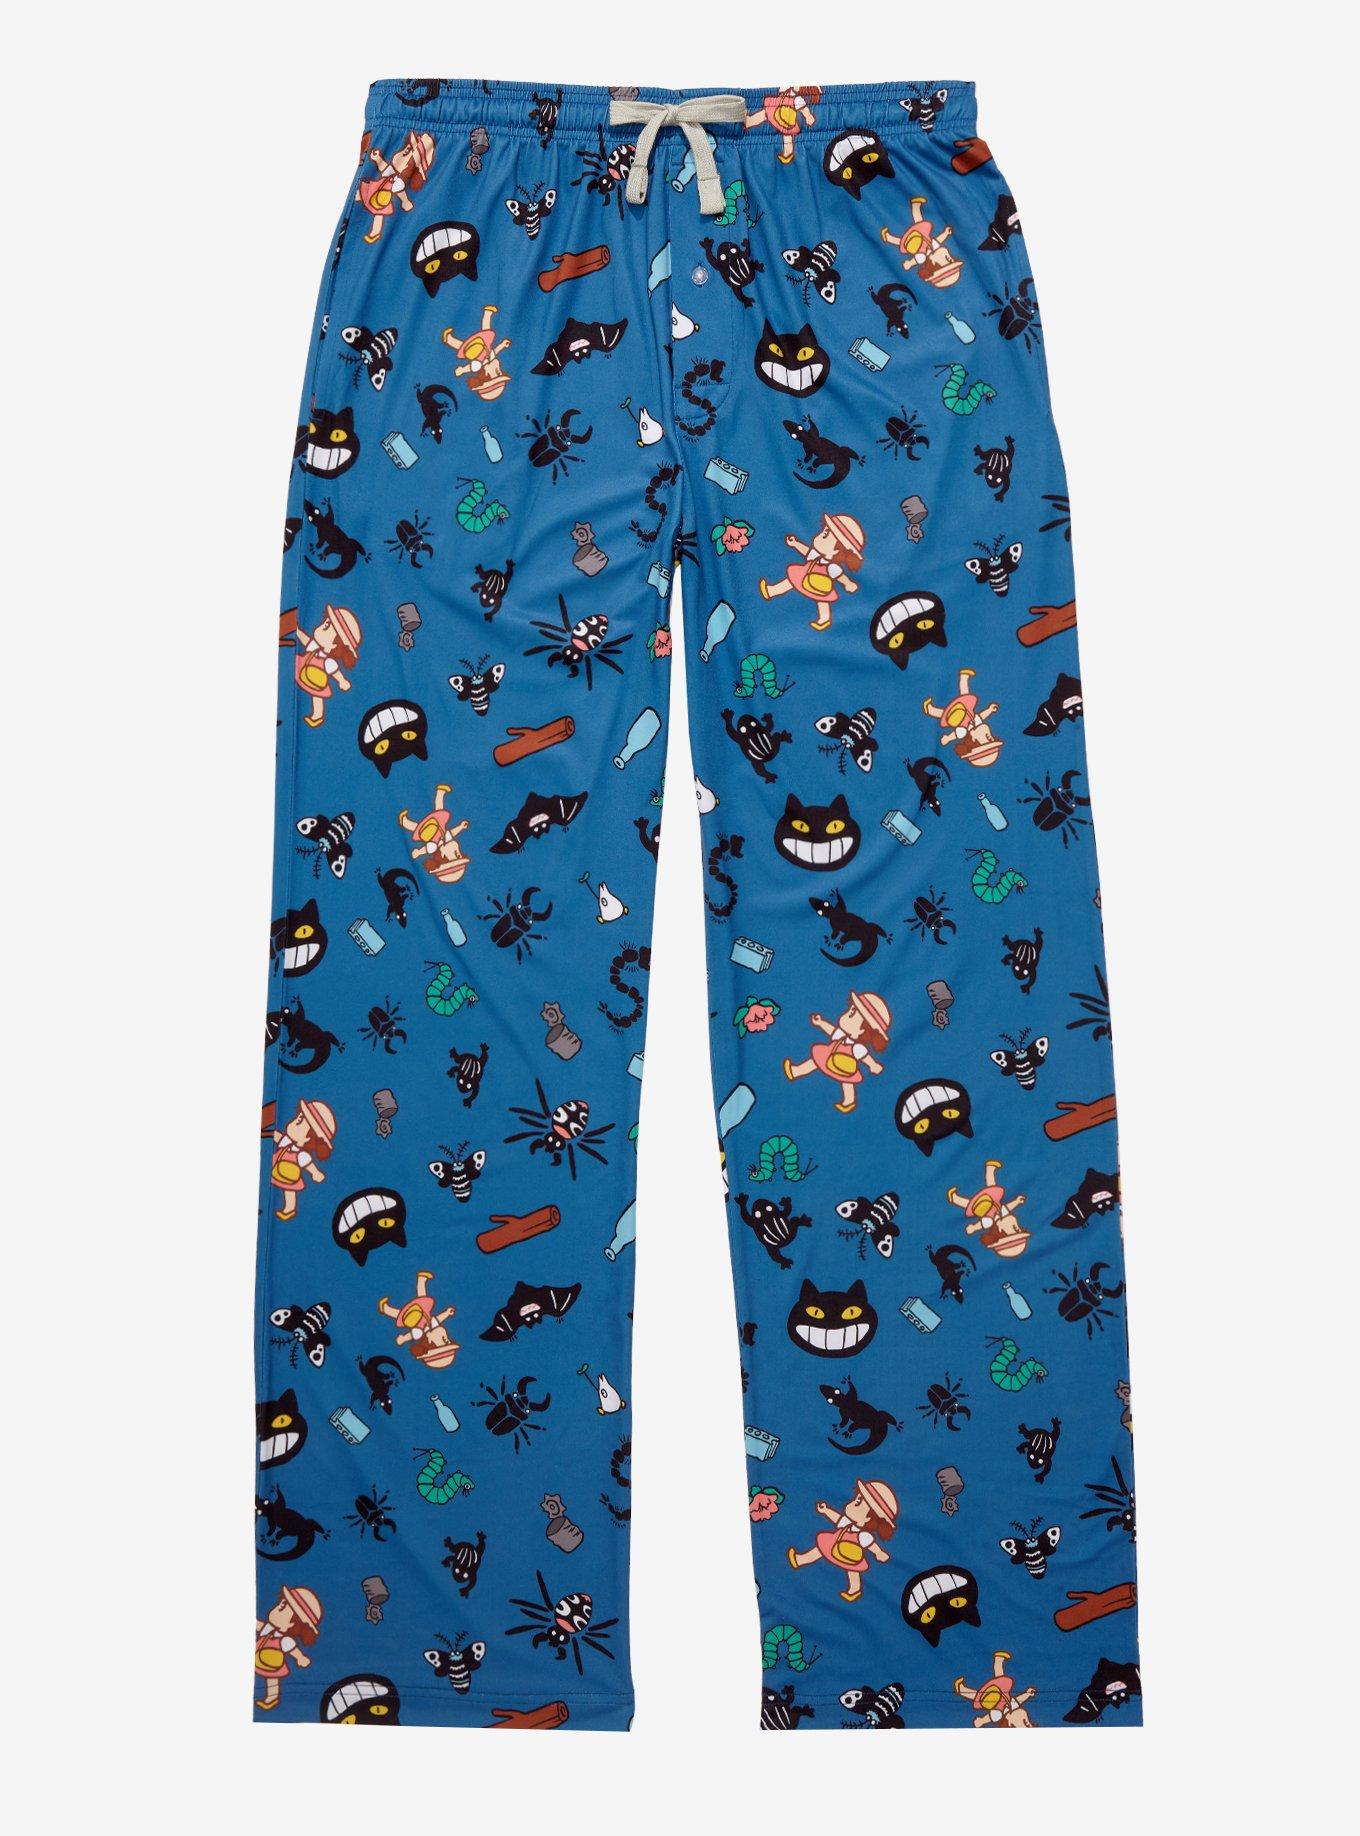 Hatley Game Fish Men's Jersey Pajama Pant